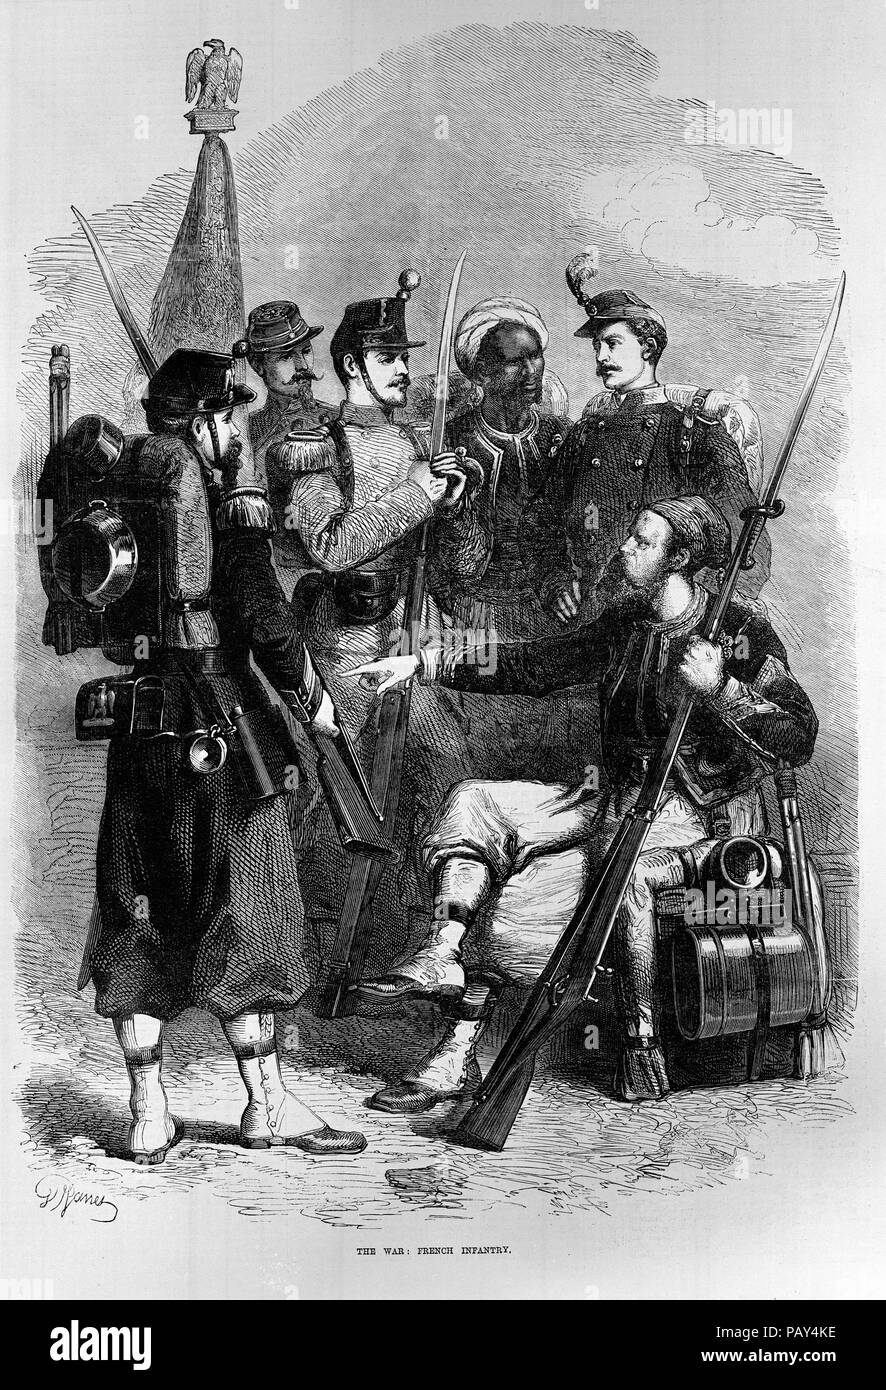 Incisione intitolata fanteria francese dalla guerra franco-prussiana. Dal Illustrated London News (3 settembre 1870), pg. 236 Foto Stock